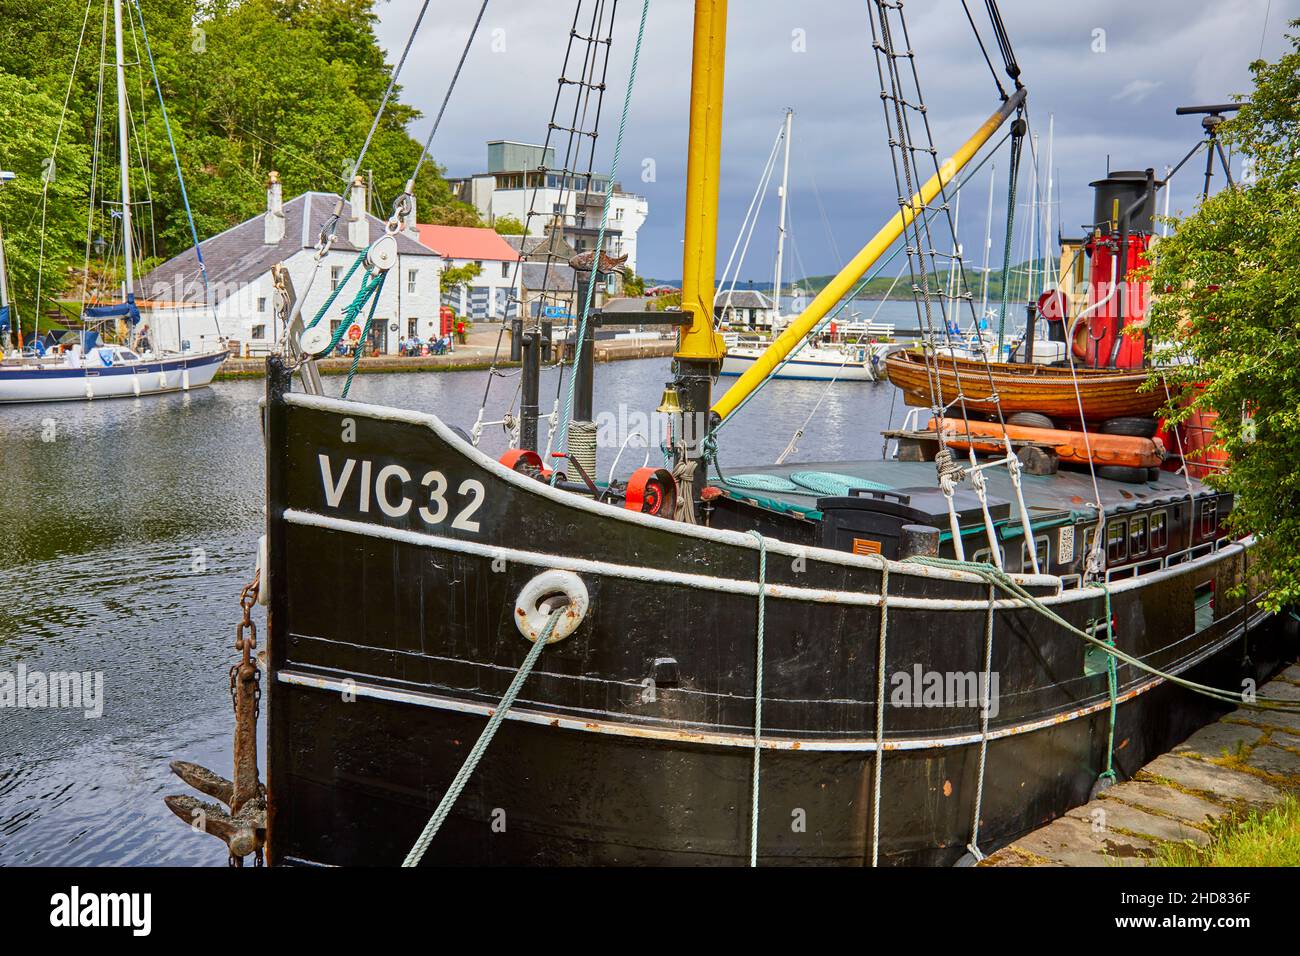 S. L. VIC 32 moored at Crinan Stock Photo